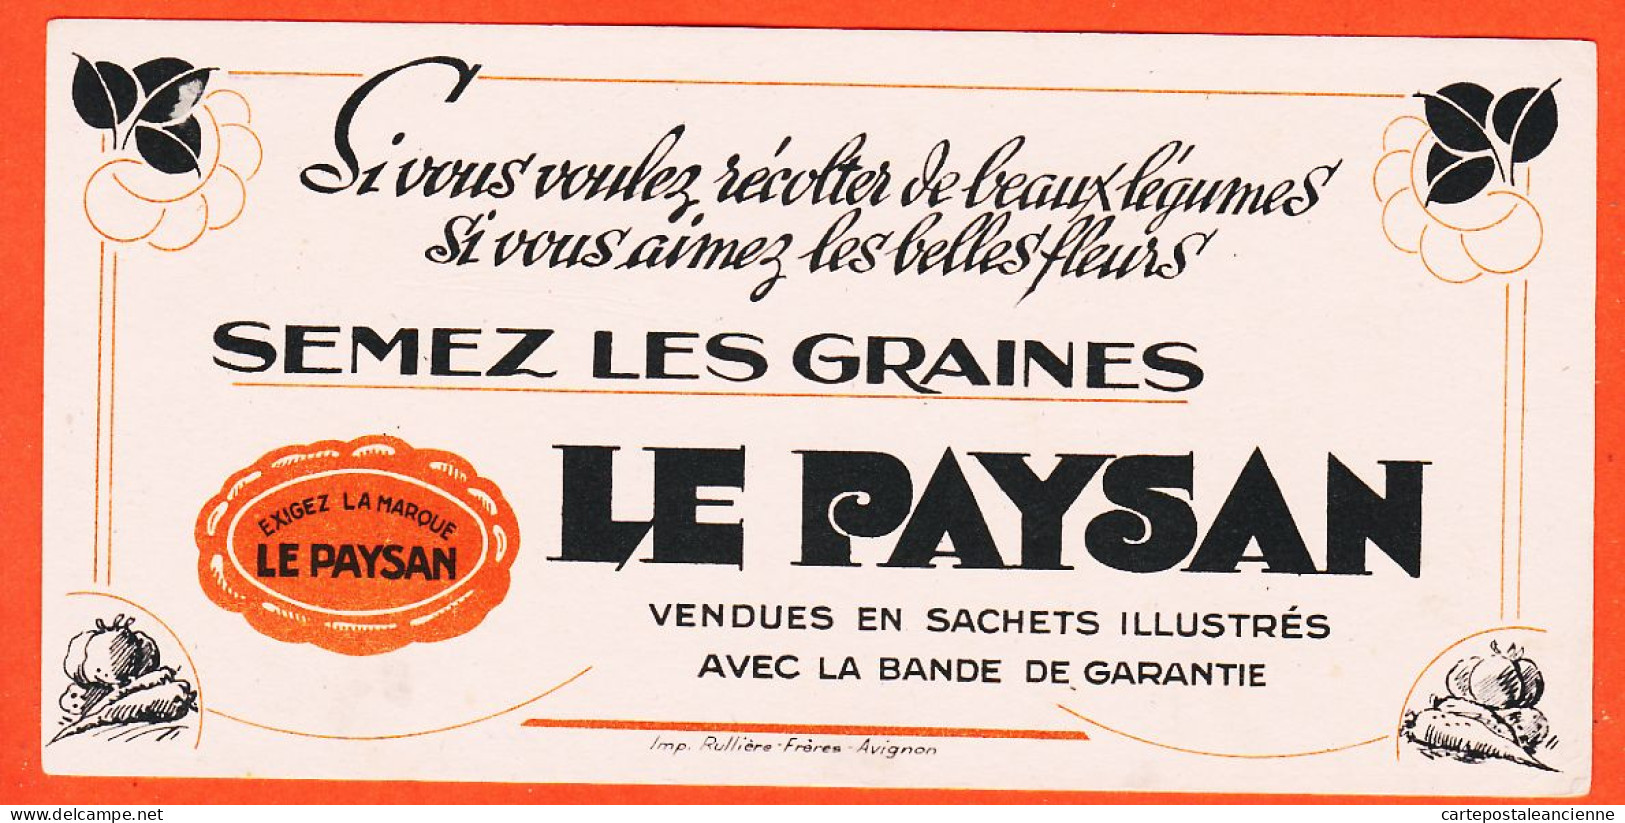 06247 / Exigez La Marque LE PAYSAN Semez Les Graines Imprimerie RULLIERE Avignon Buvard  Dim 20x9.8 - Agriculture